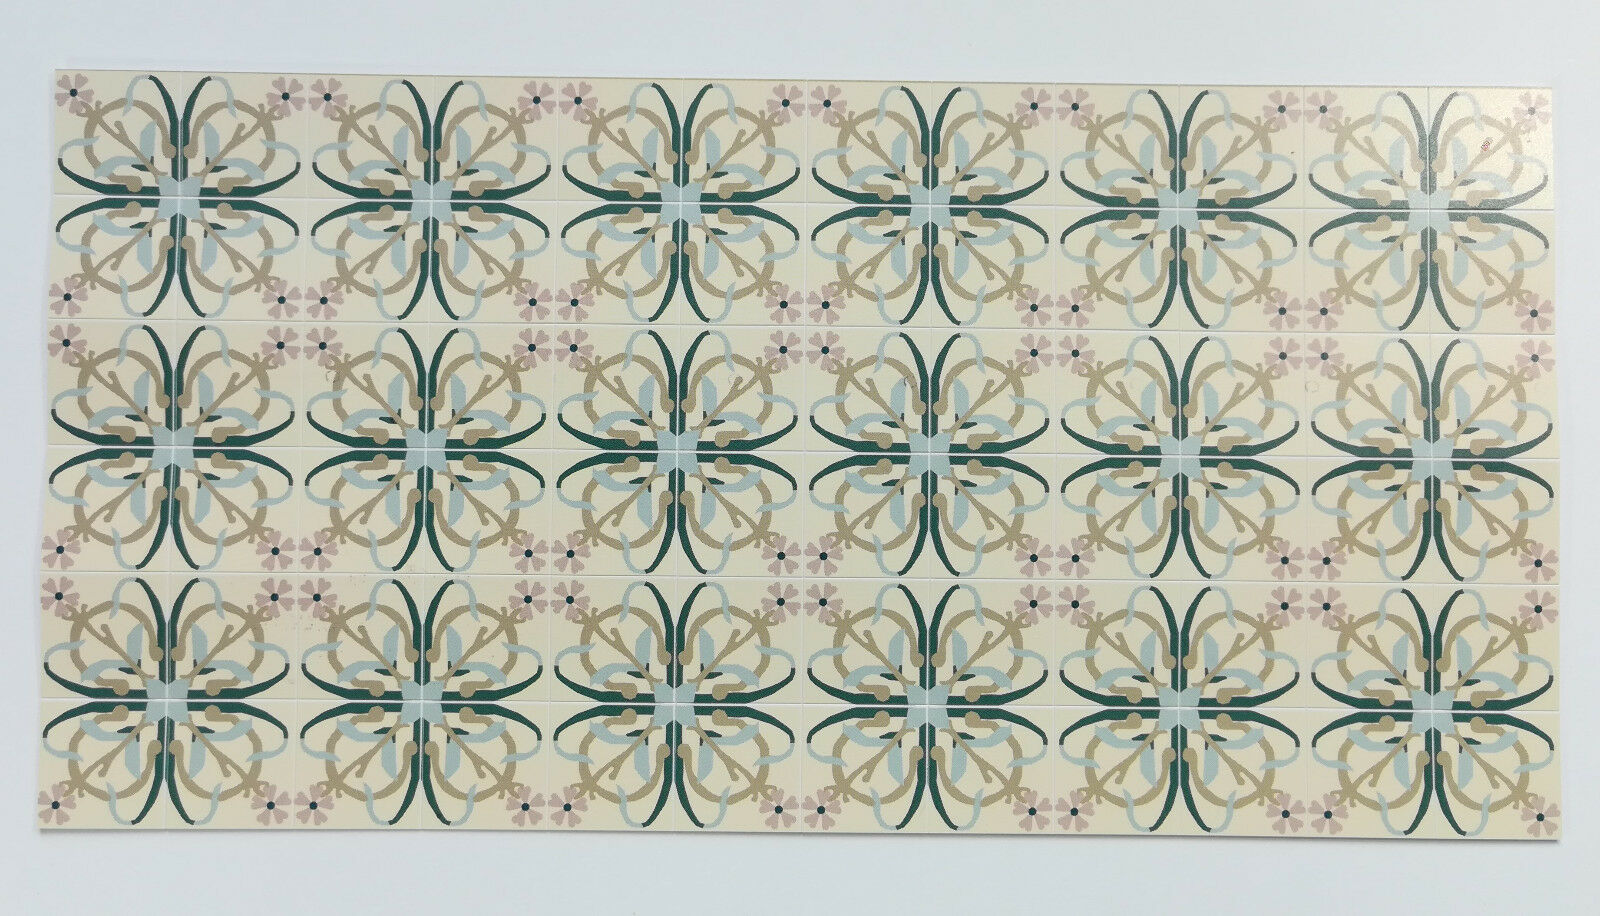 Dollhouse Miniature Art Nouveau Tile Flooring Sheet 1:12 Scale Break Off Pieces